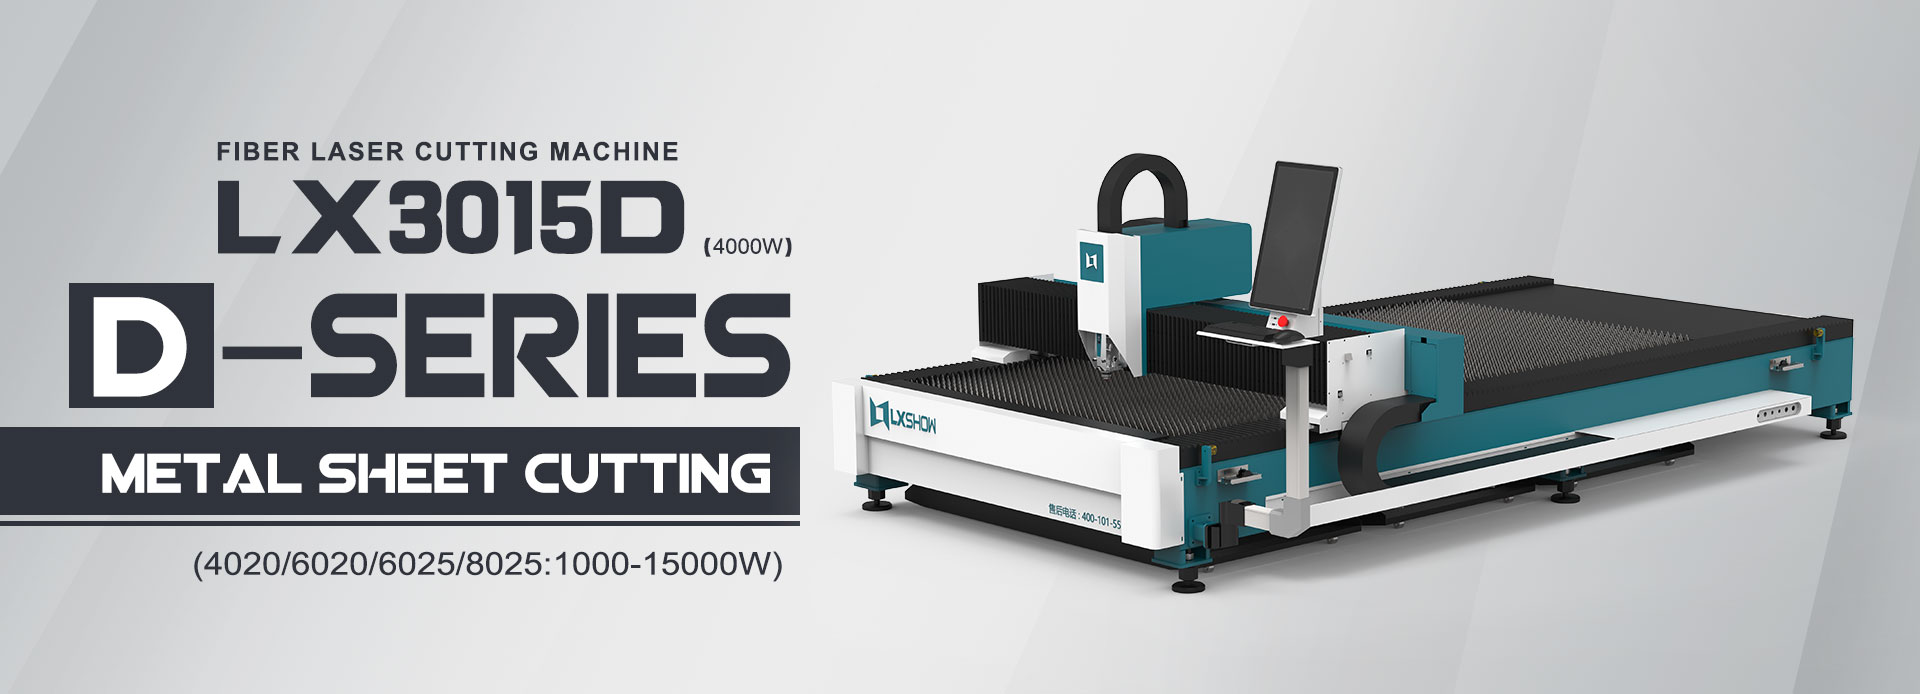 LX3015D CNC Metal Plate Fiber Laser Cutting Machine 1000W 2000W 4000W 6000W Kuʻikuʻi ʻAi ʻAi